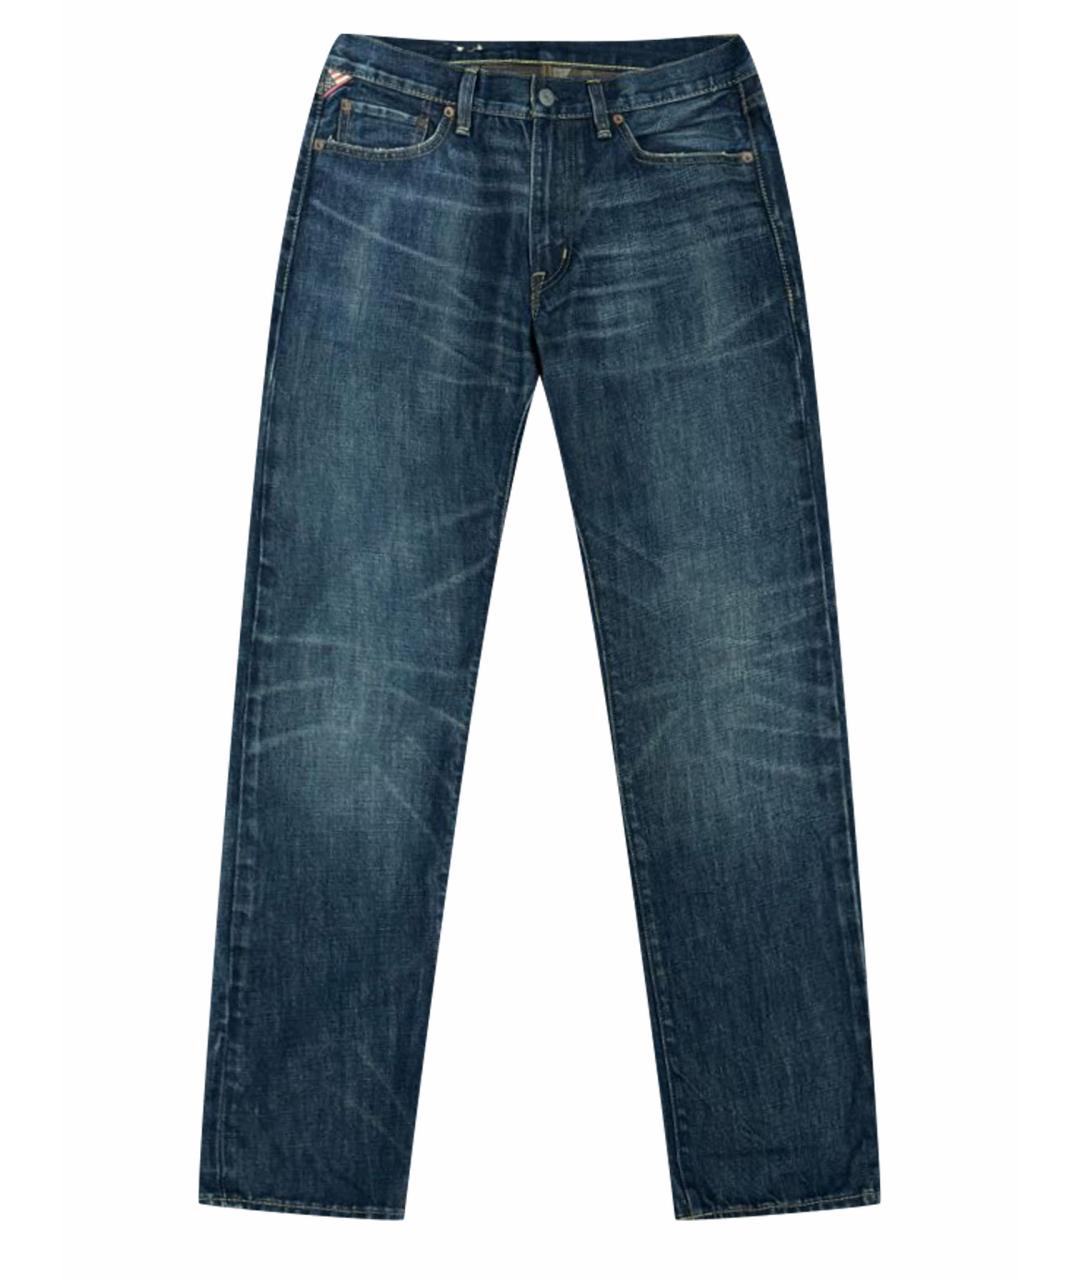 RALPH LAUREN DENIM & SUPPLY Темно-синие хлопковые джинсы скинни, фото 1